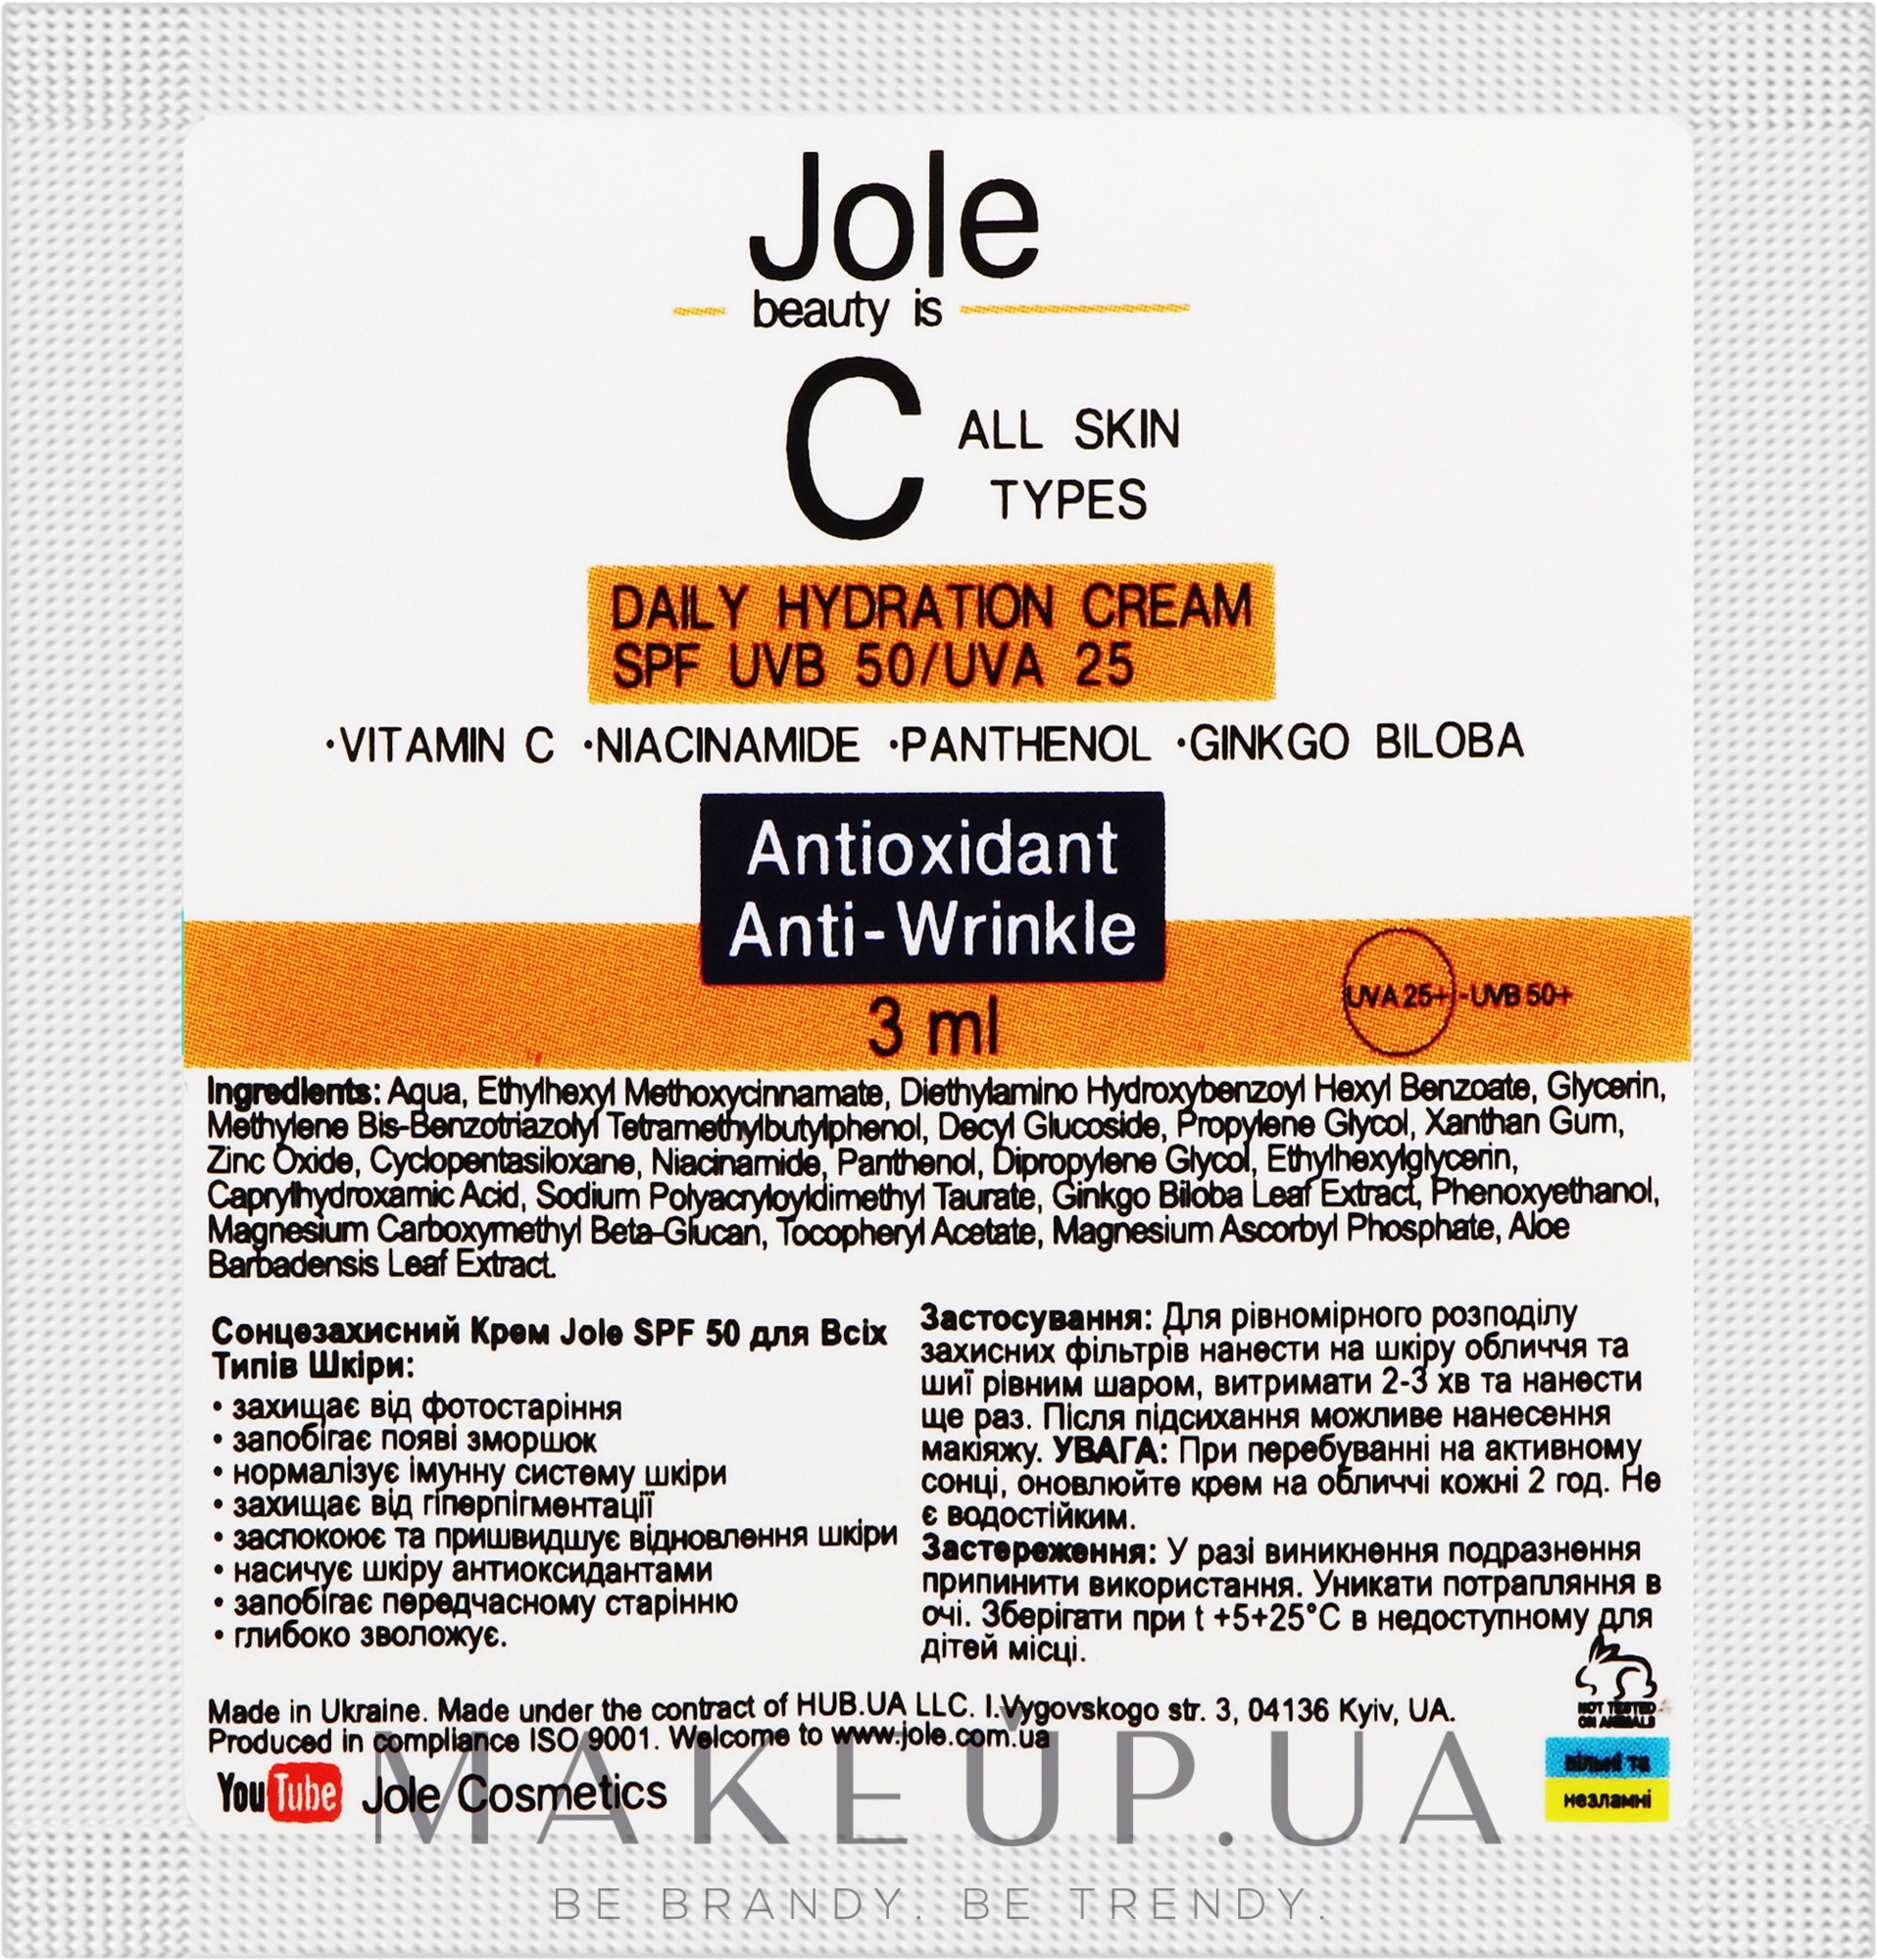 Легкий солнцезащитный крем с витамином С, ниацинамидом и экстрактом гинкго билоба - Jole Daily Hydrating Cream SPF UVB 50 UVA 25 (пробник) — фото 3ml